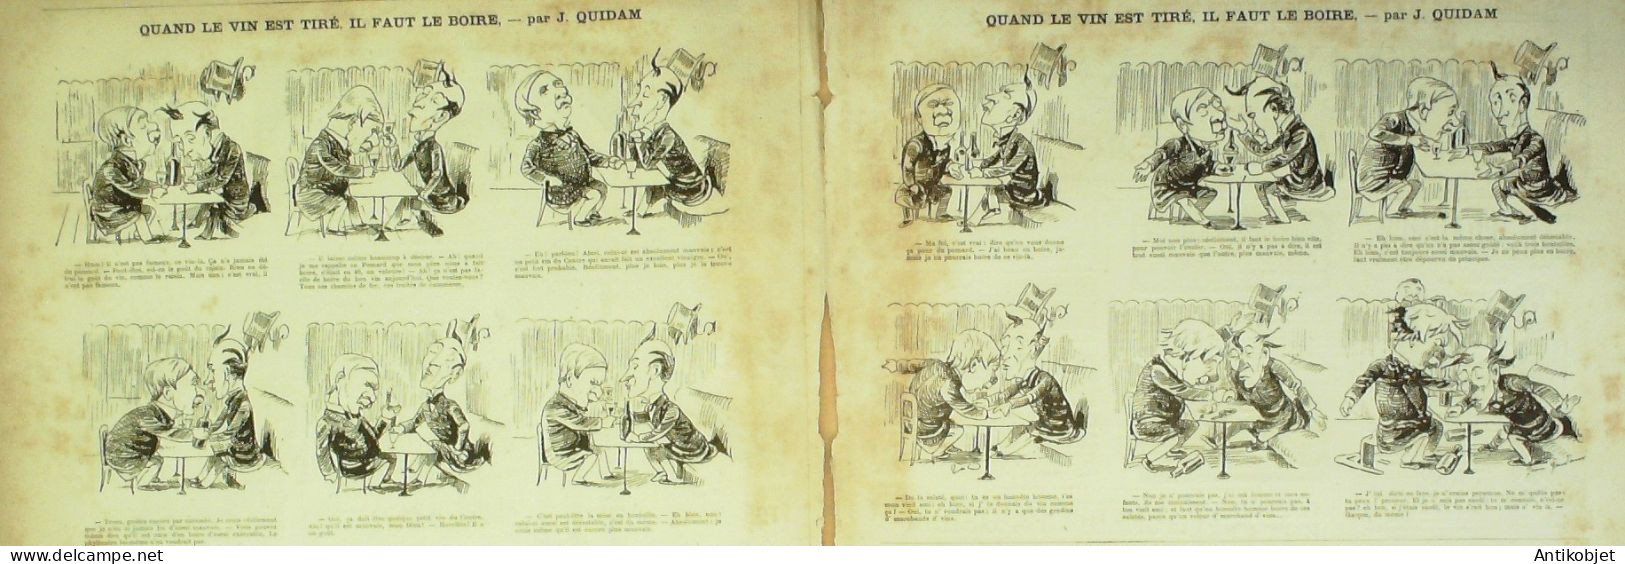 La Caricature 1881 N°  72 Cours D'escrime Au Conservatoire Robida Barret Loys Trock Quidam - Zeitschriften - Vor 1900